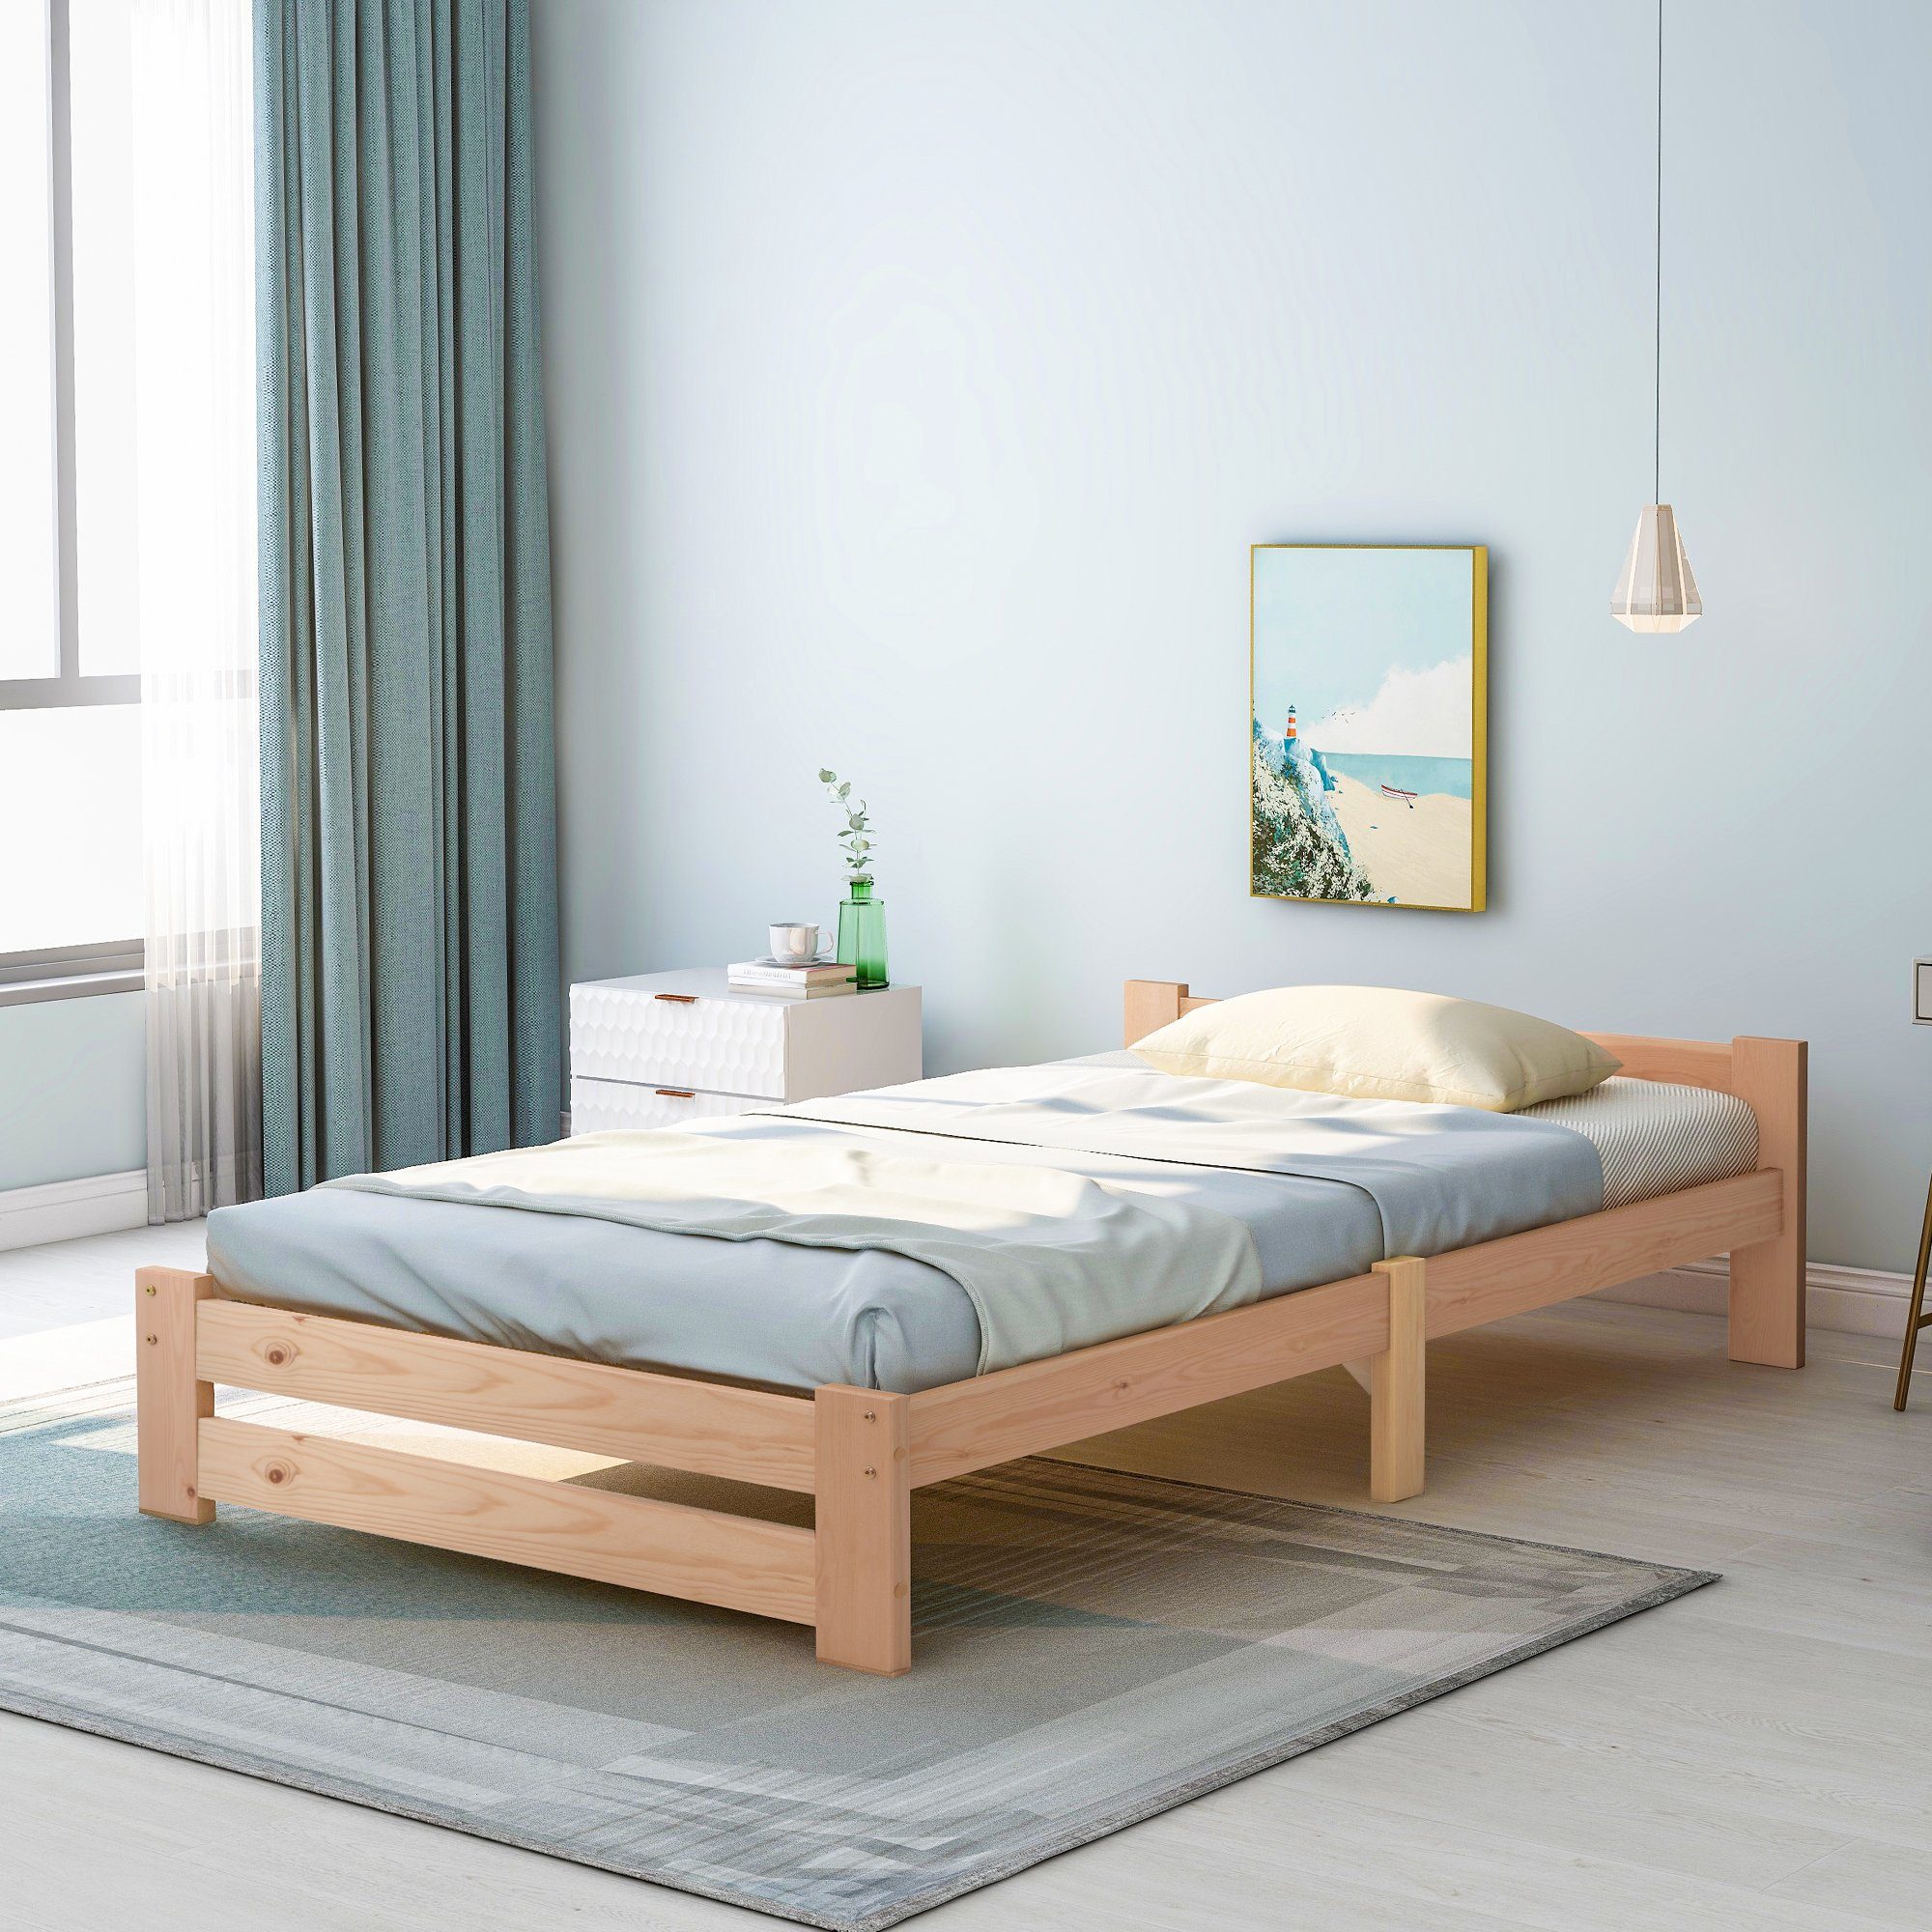 Ohne Kinderbett (mit Kopfteil Jugendbett und Einzelbett Bettrahmen Bett Matratze Holzbett Lattenrost), SPLOE HAUSS